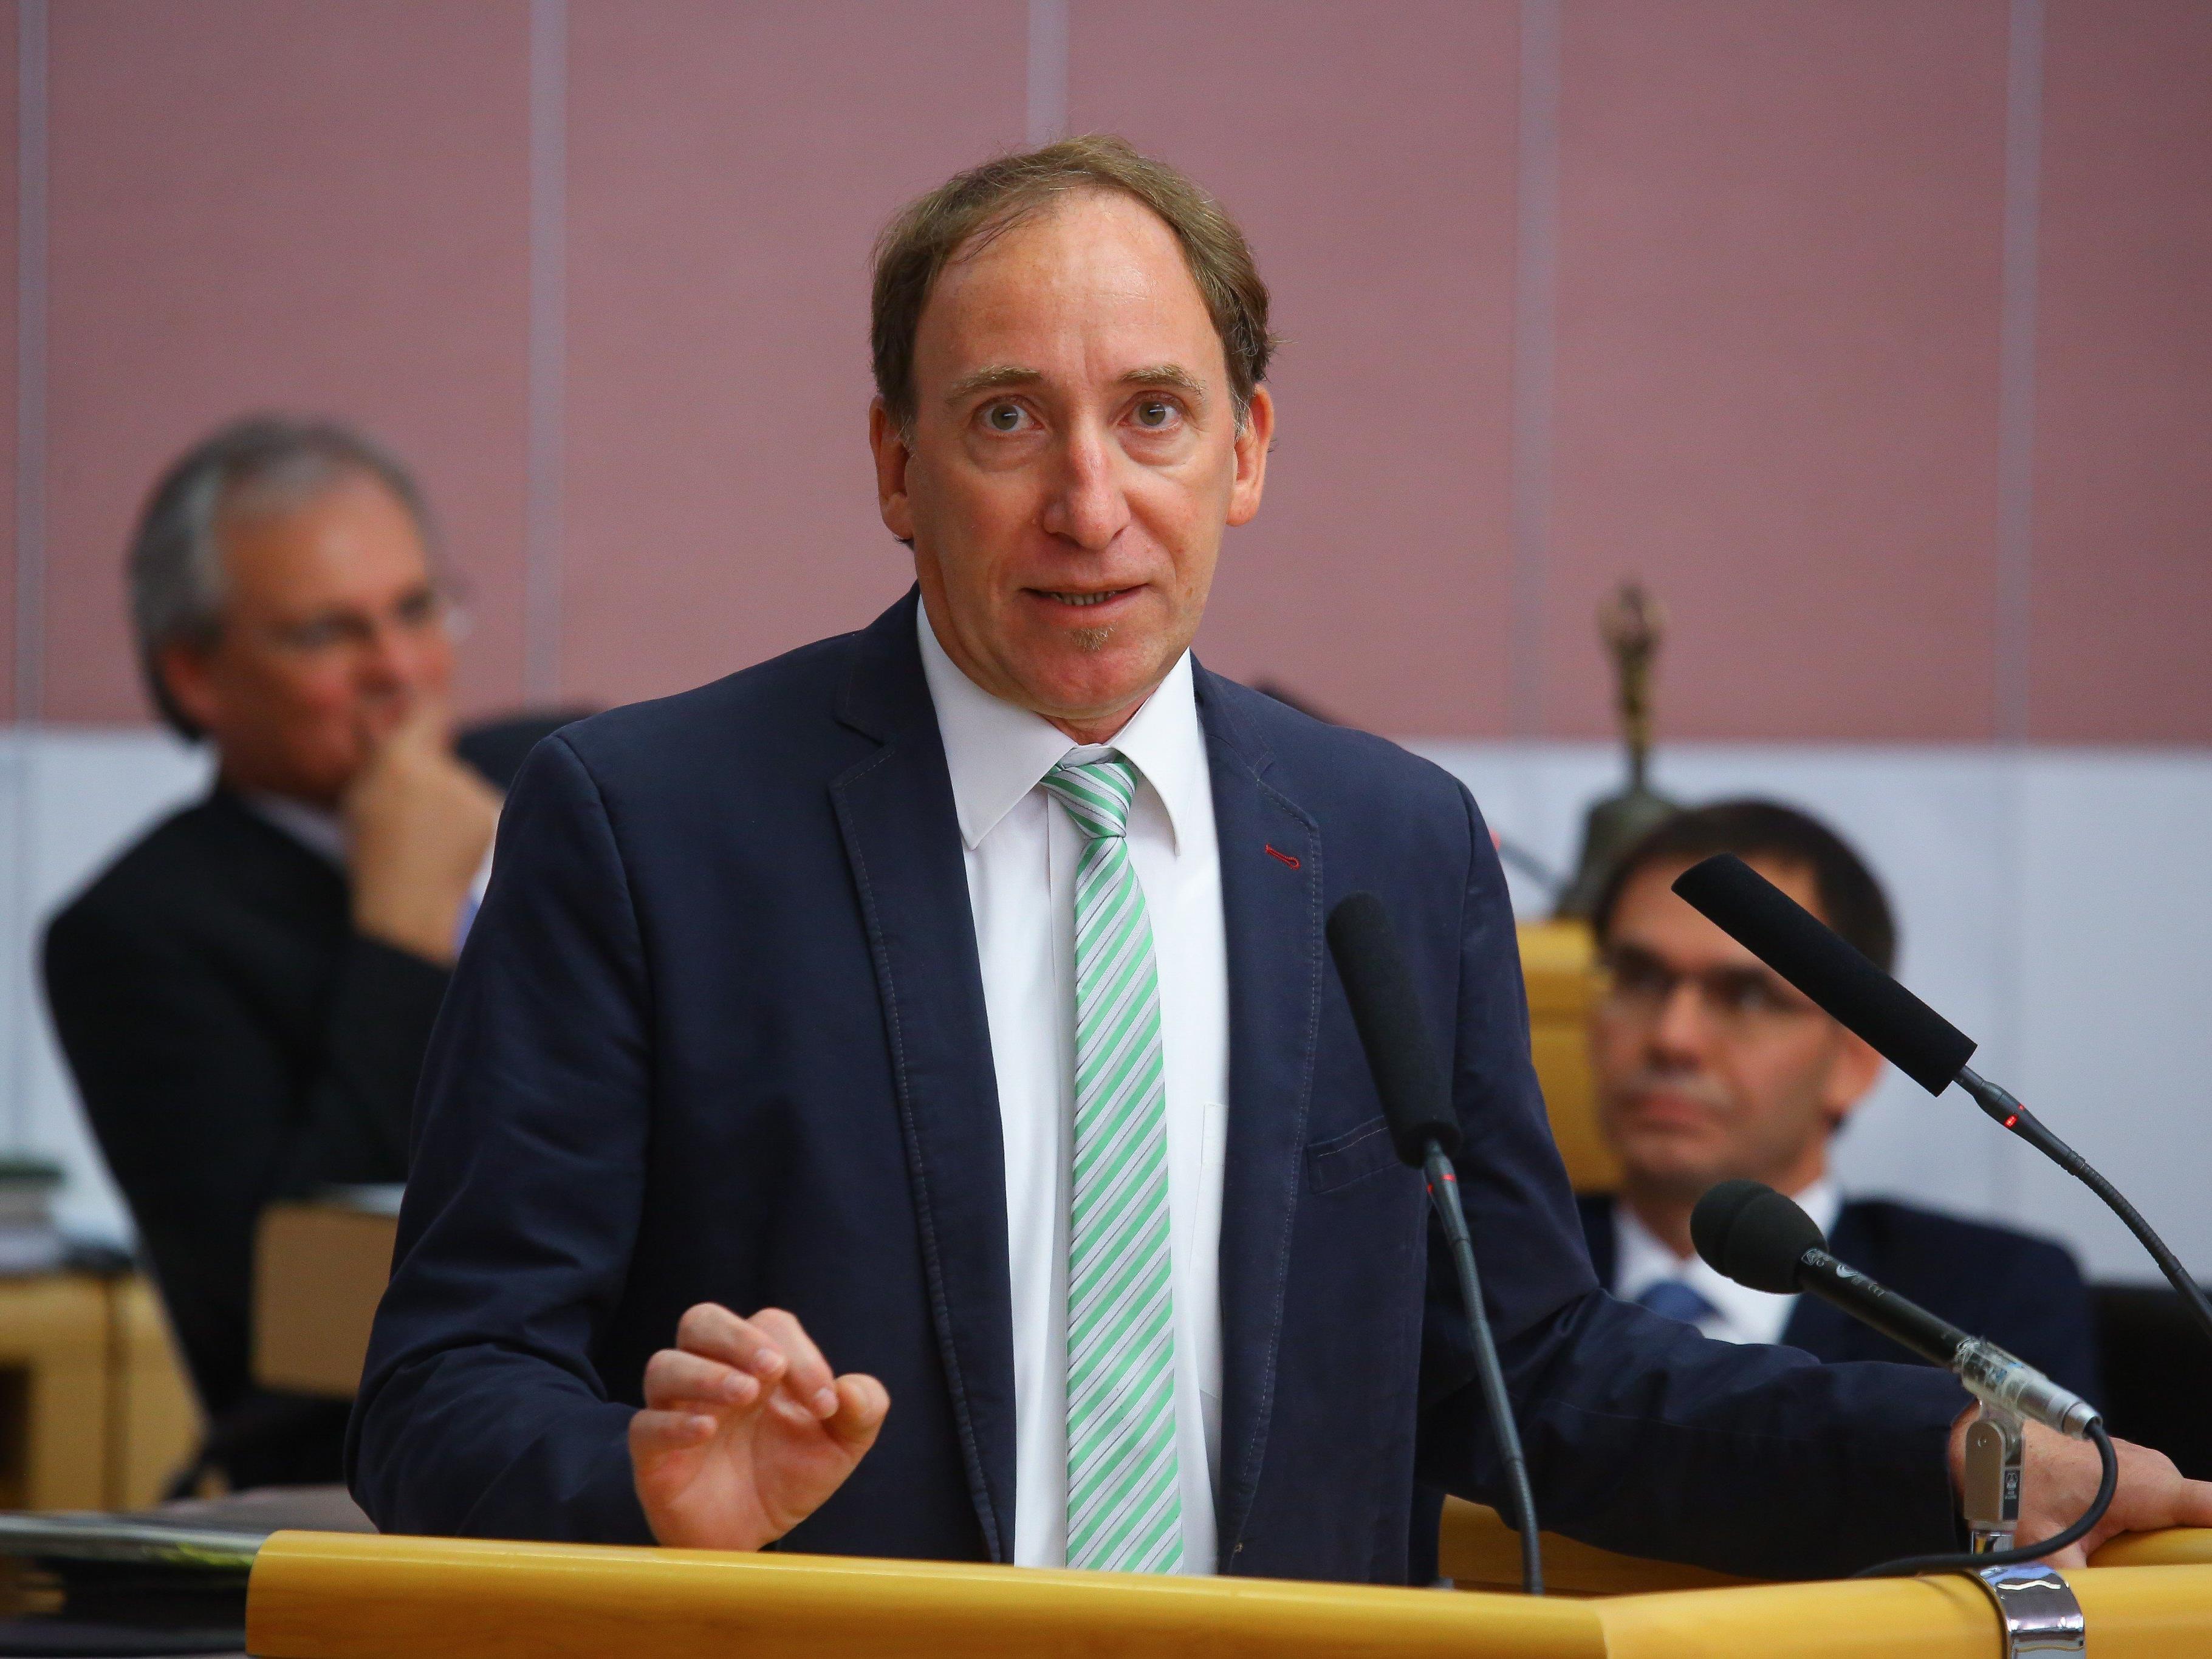 Vorarlbergs Umweltlandesrat Johannes Rauch hat den Widerstand gegen das Paket von Umweltminister Rupprechter initiiert.